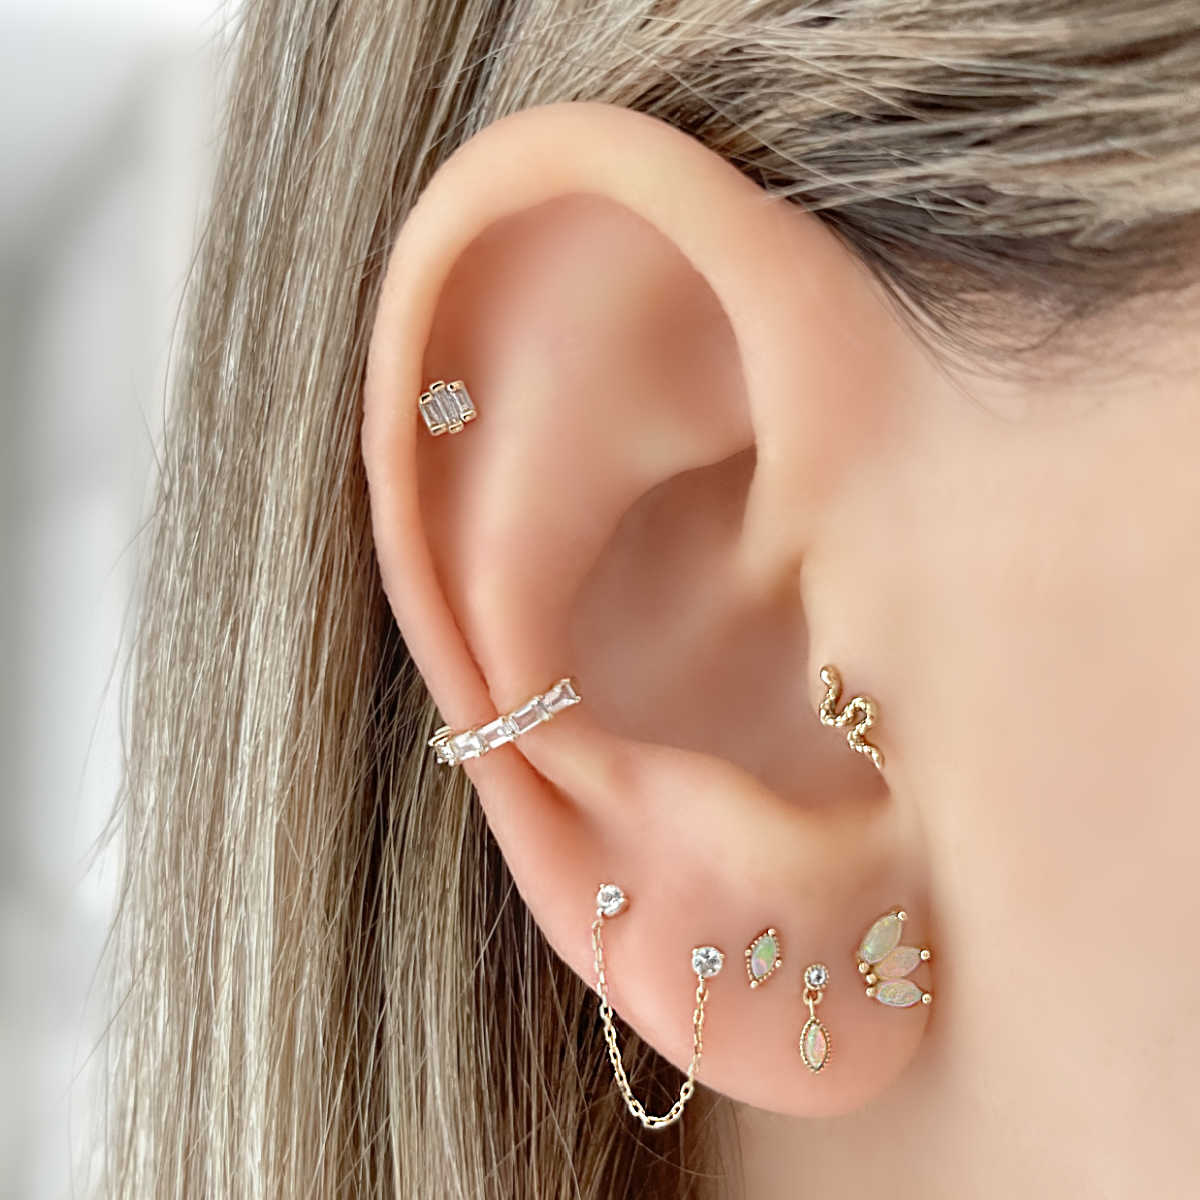 Yesbay Men Women Rhinestone Cartilage Tragus Bar Helix Upper Ear Earring  Stud Jewelry-Silver White Diamond - Walmart.com